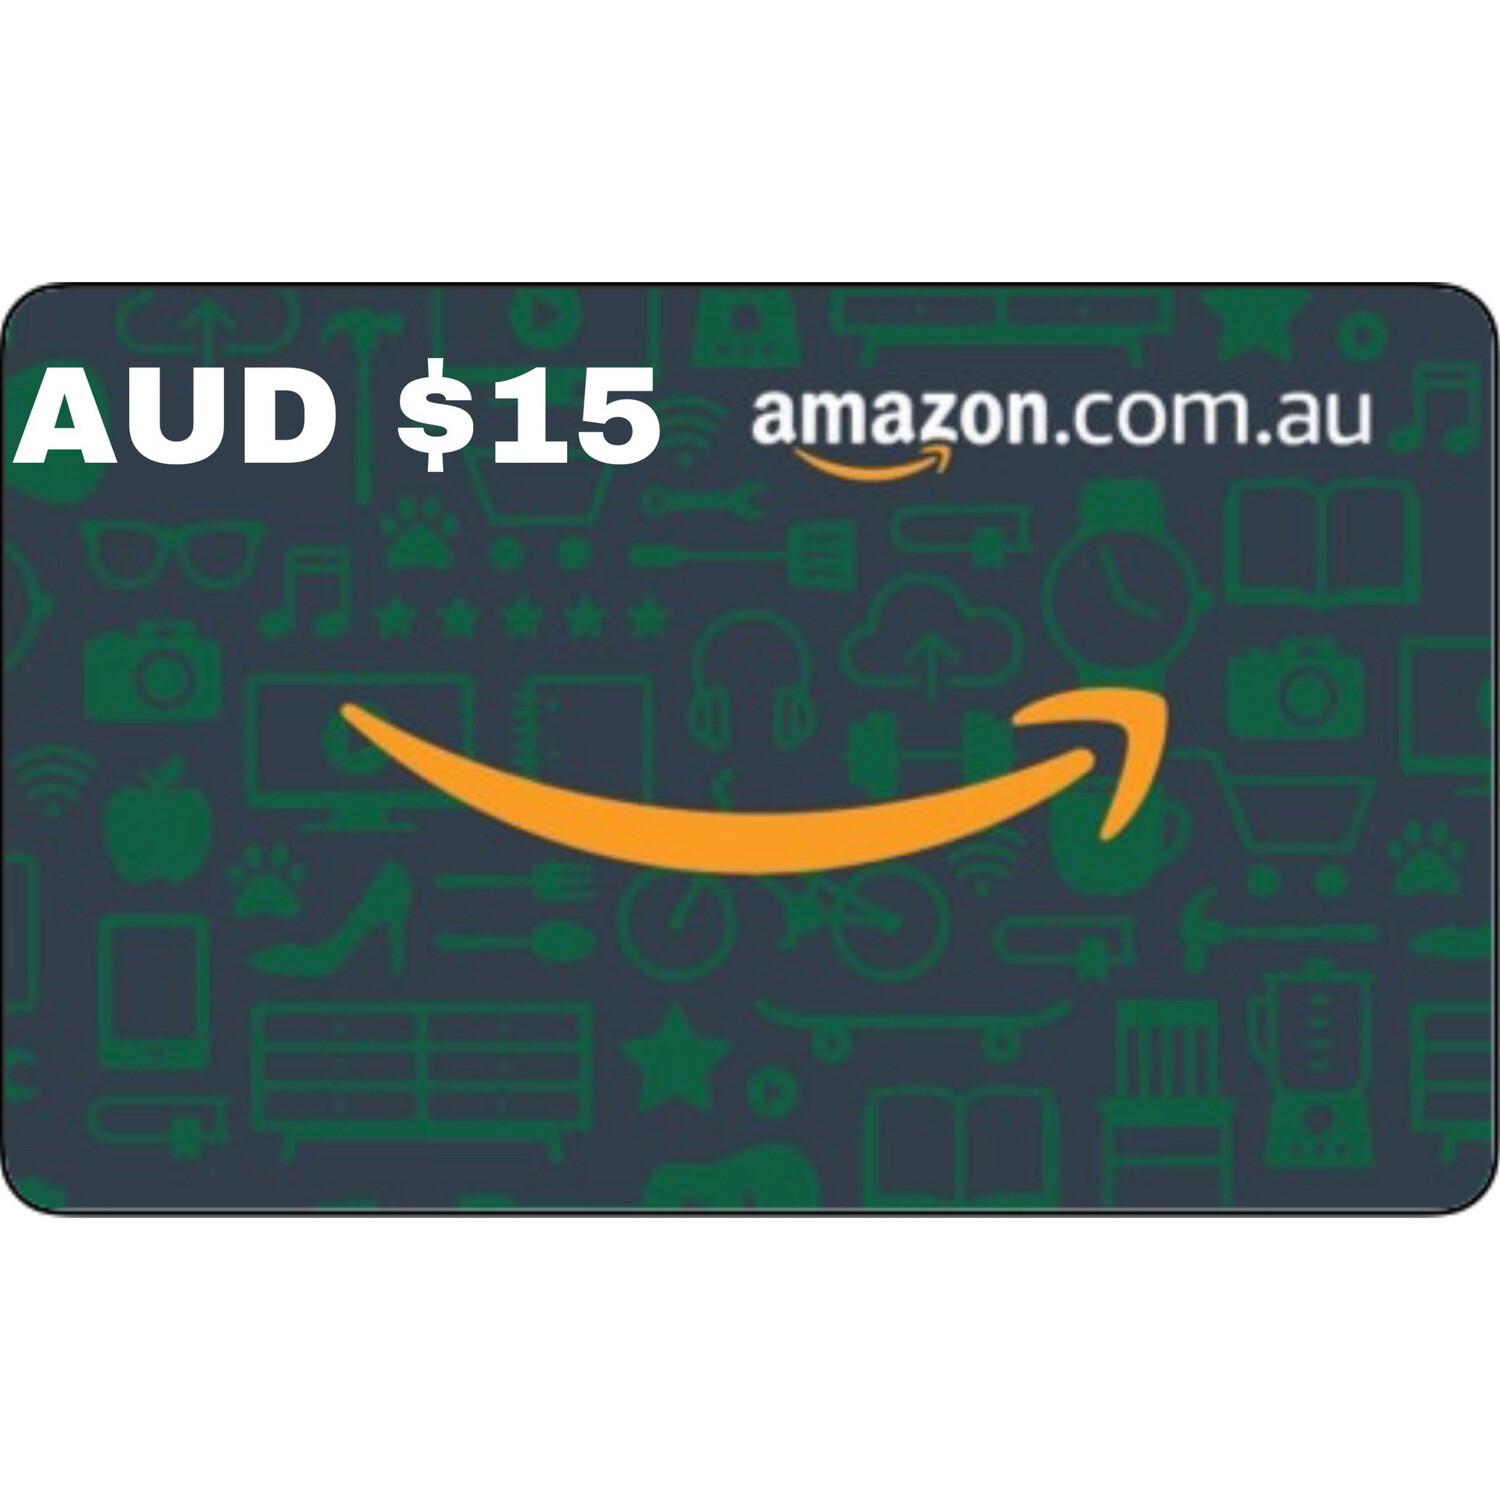 Amazon.com.au Gift Card Australia AUD $15